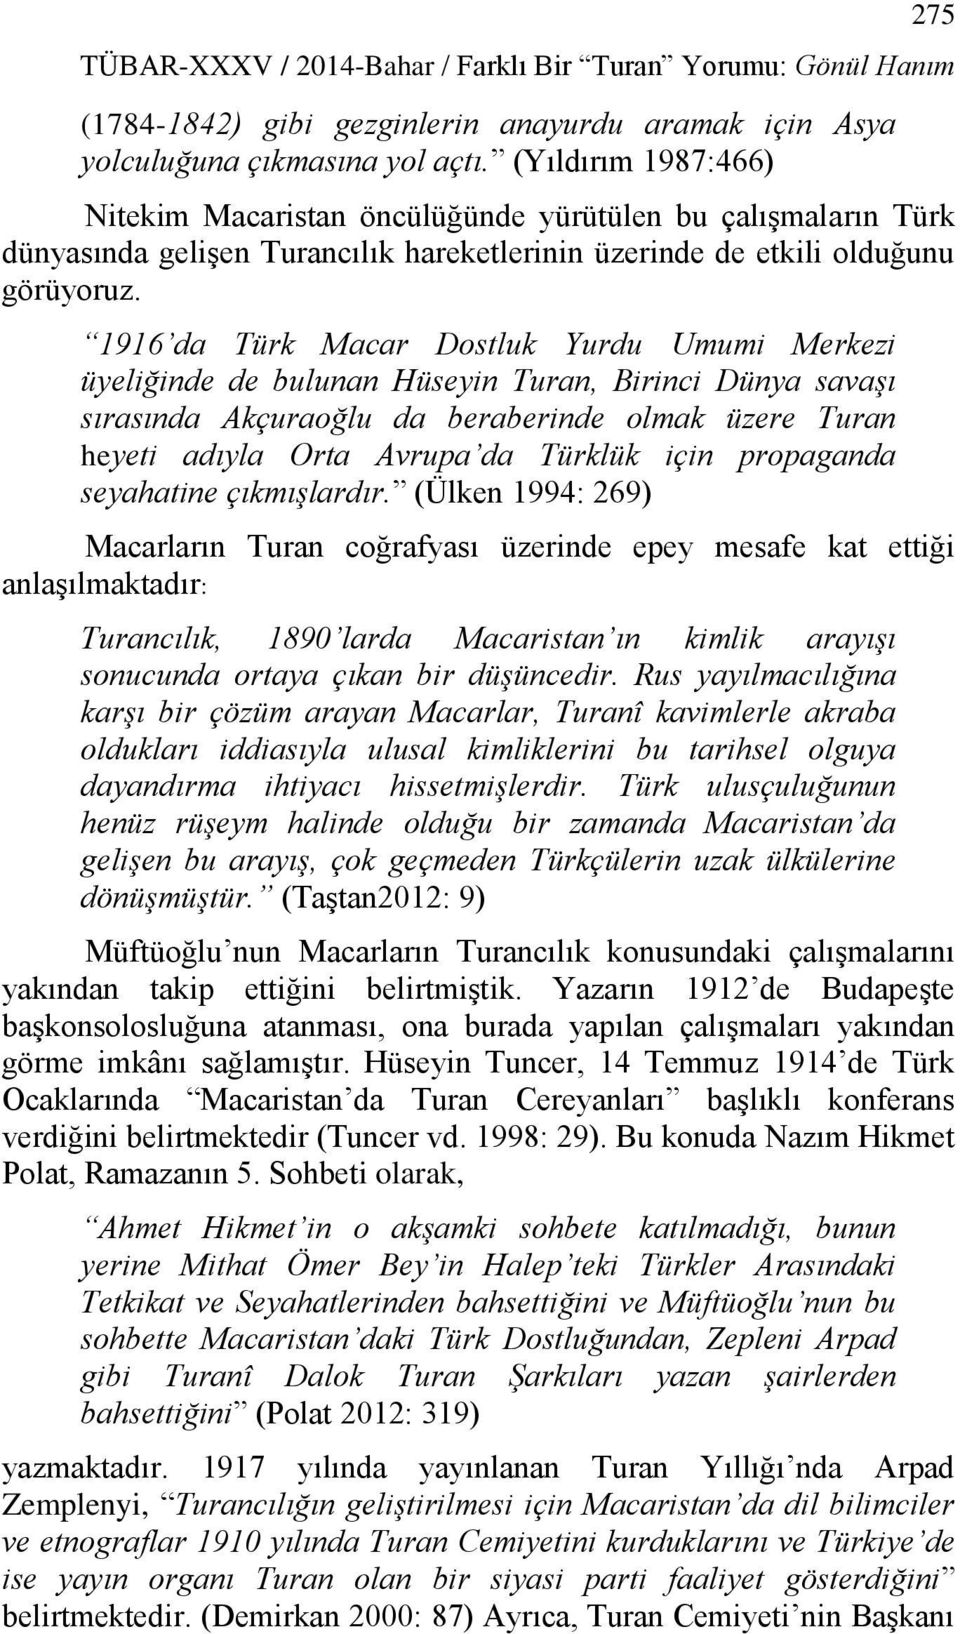 1916 da Türk Macar Dostluk Yurdu Umumi Merkezi üyeliğinde de bulunan Hüseyin Turan, Birinci Dünya savaşı sırasında Akçuraoğlu da beraberinde olmak üzere Turan heyeti adıyla Orta Avrupa da Türklük